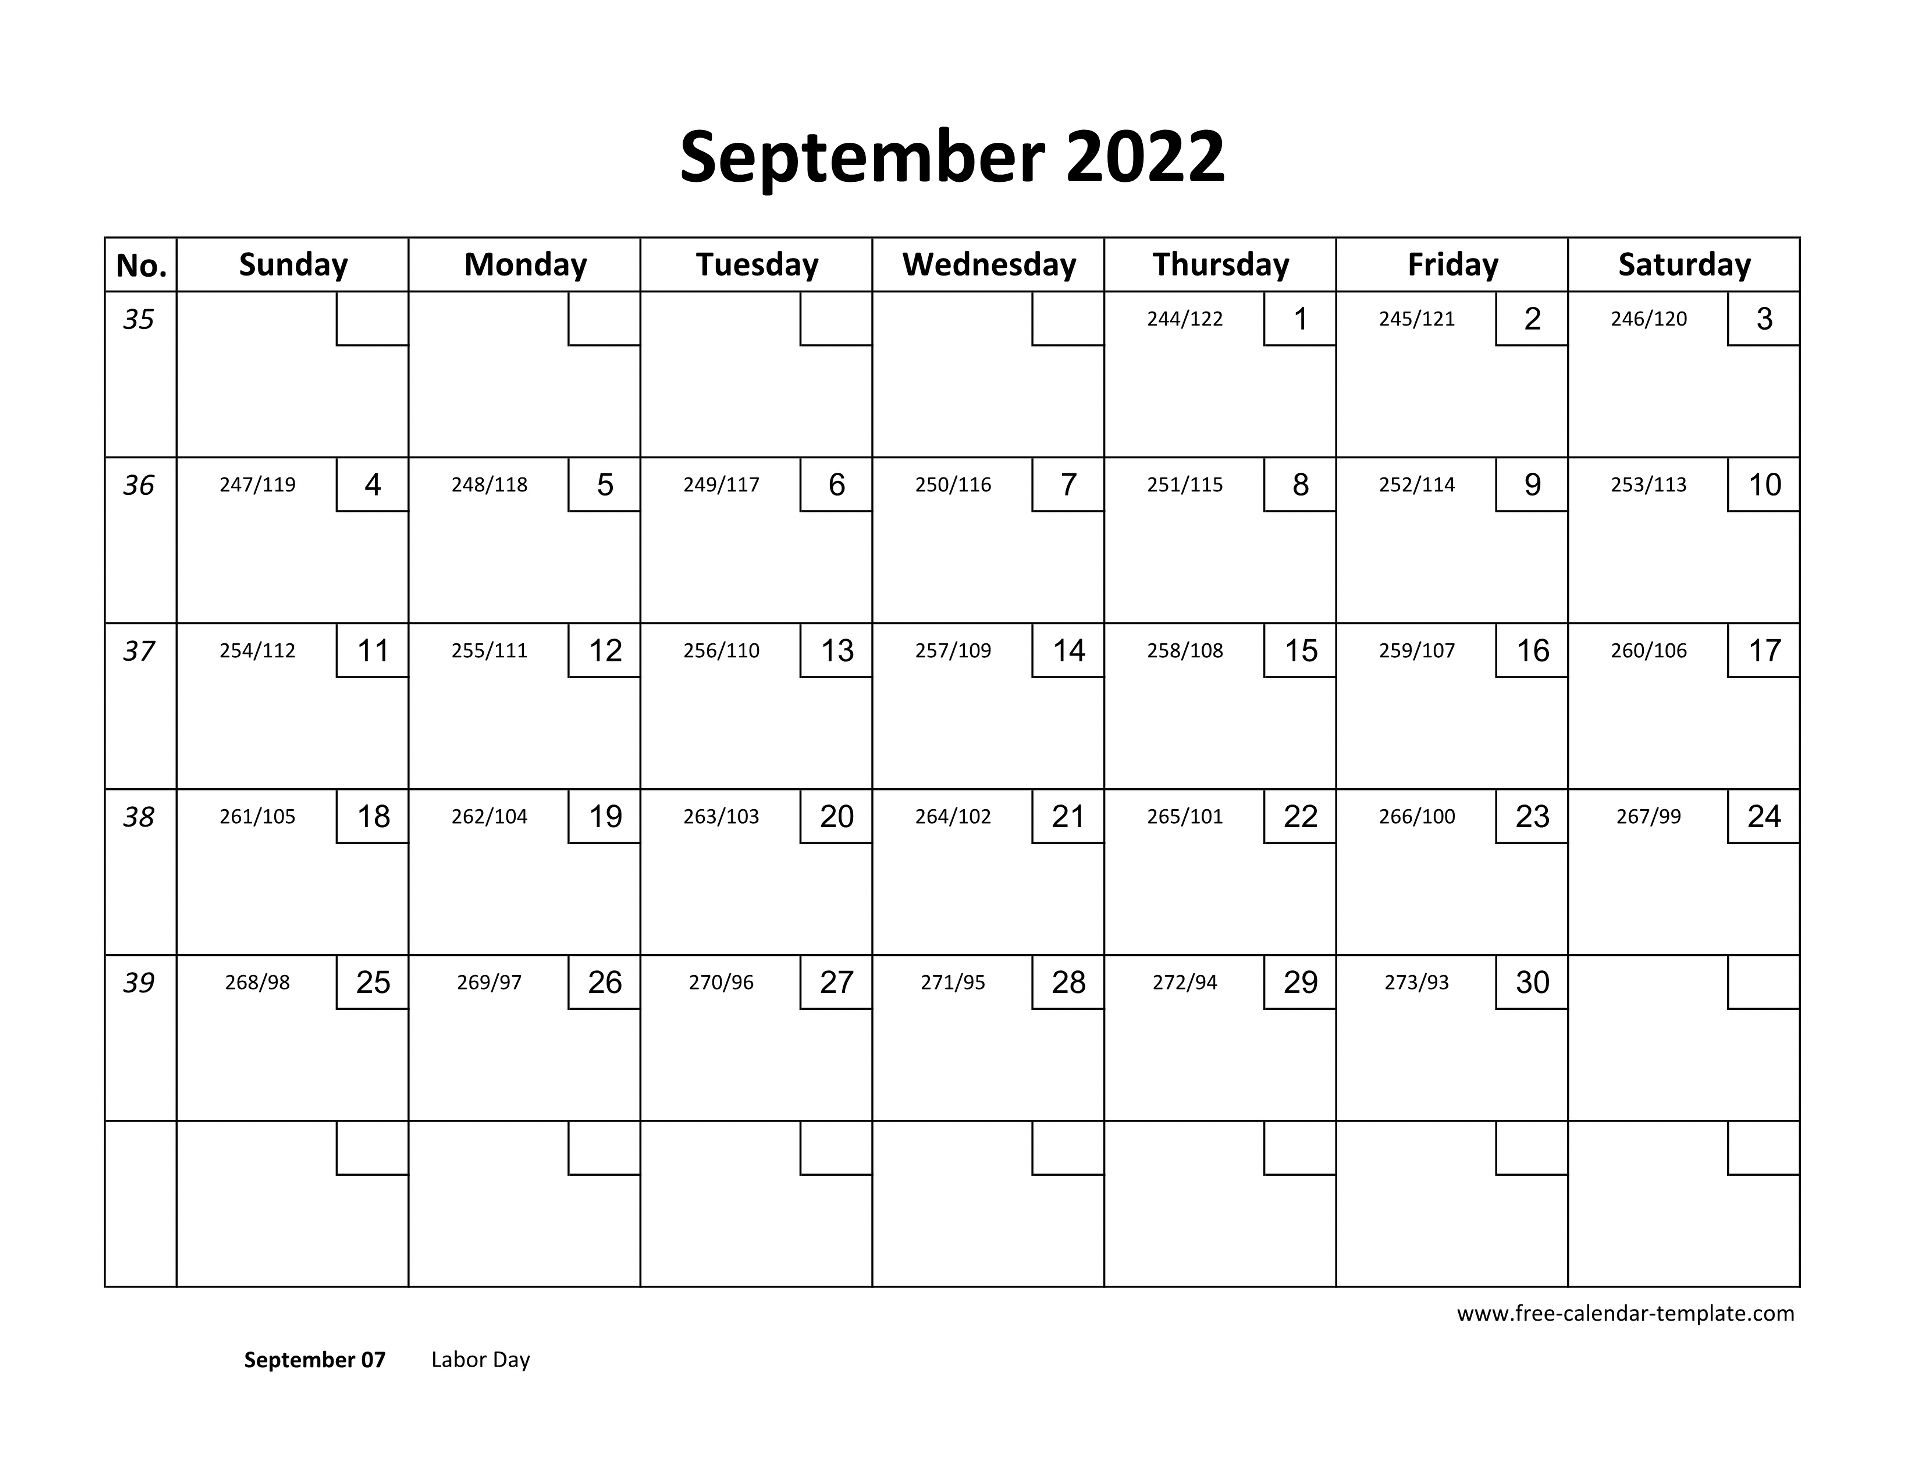 September 2022 Free Calendar Tempplate | Free-Calendar